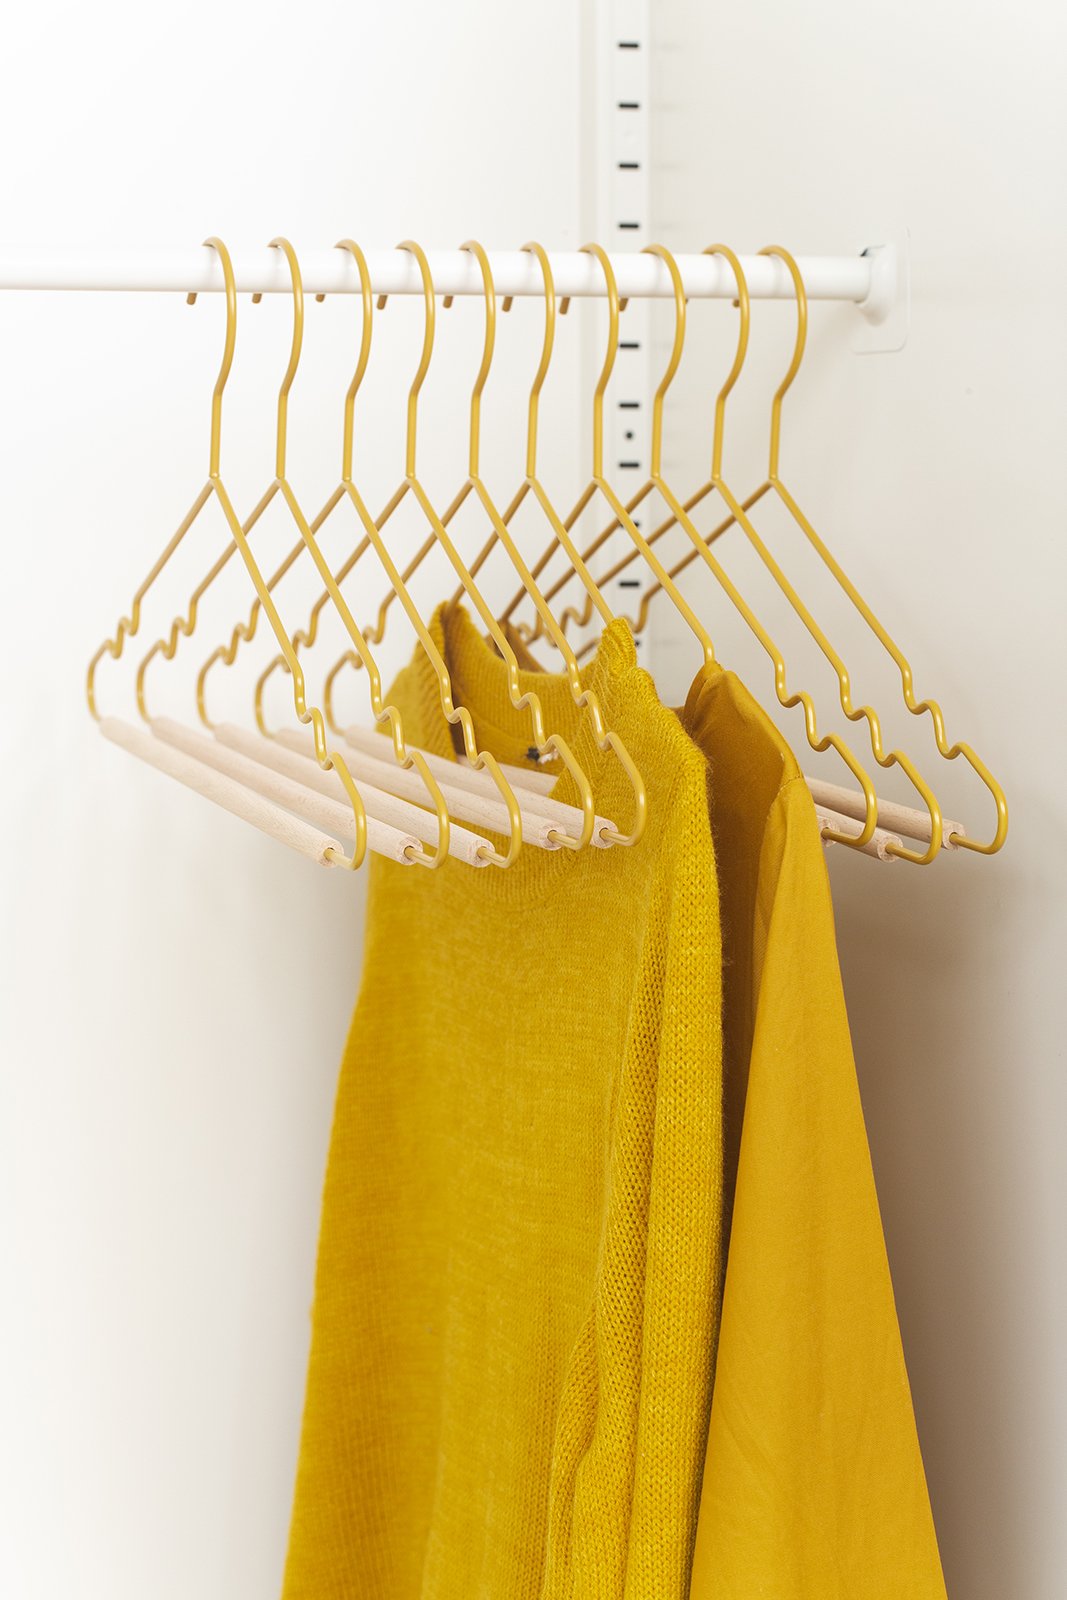 Mustard Made Hangers in Ocean - Adult Metal Clothes Hangers